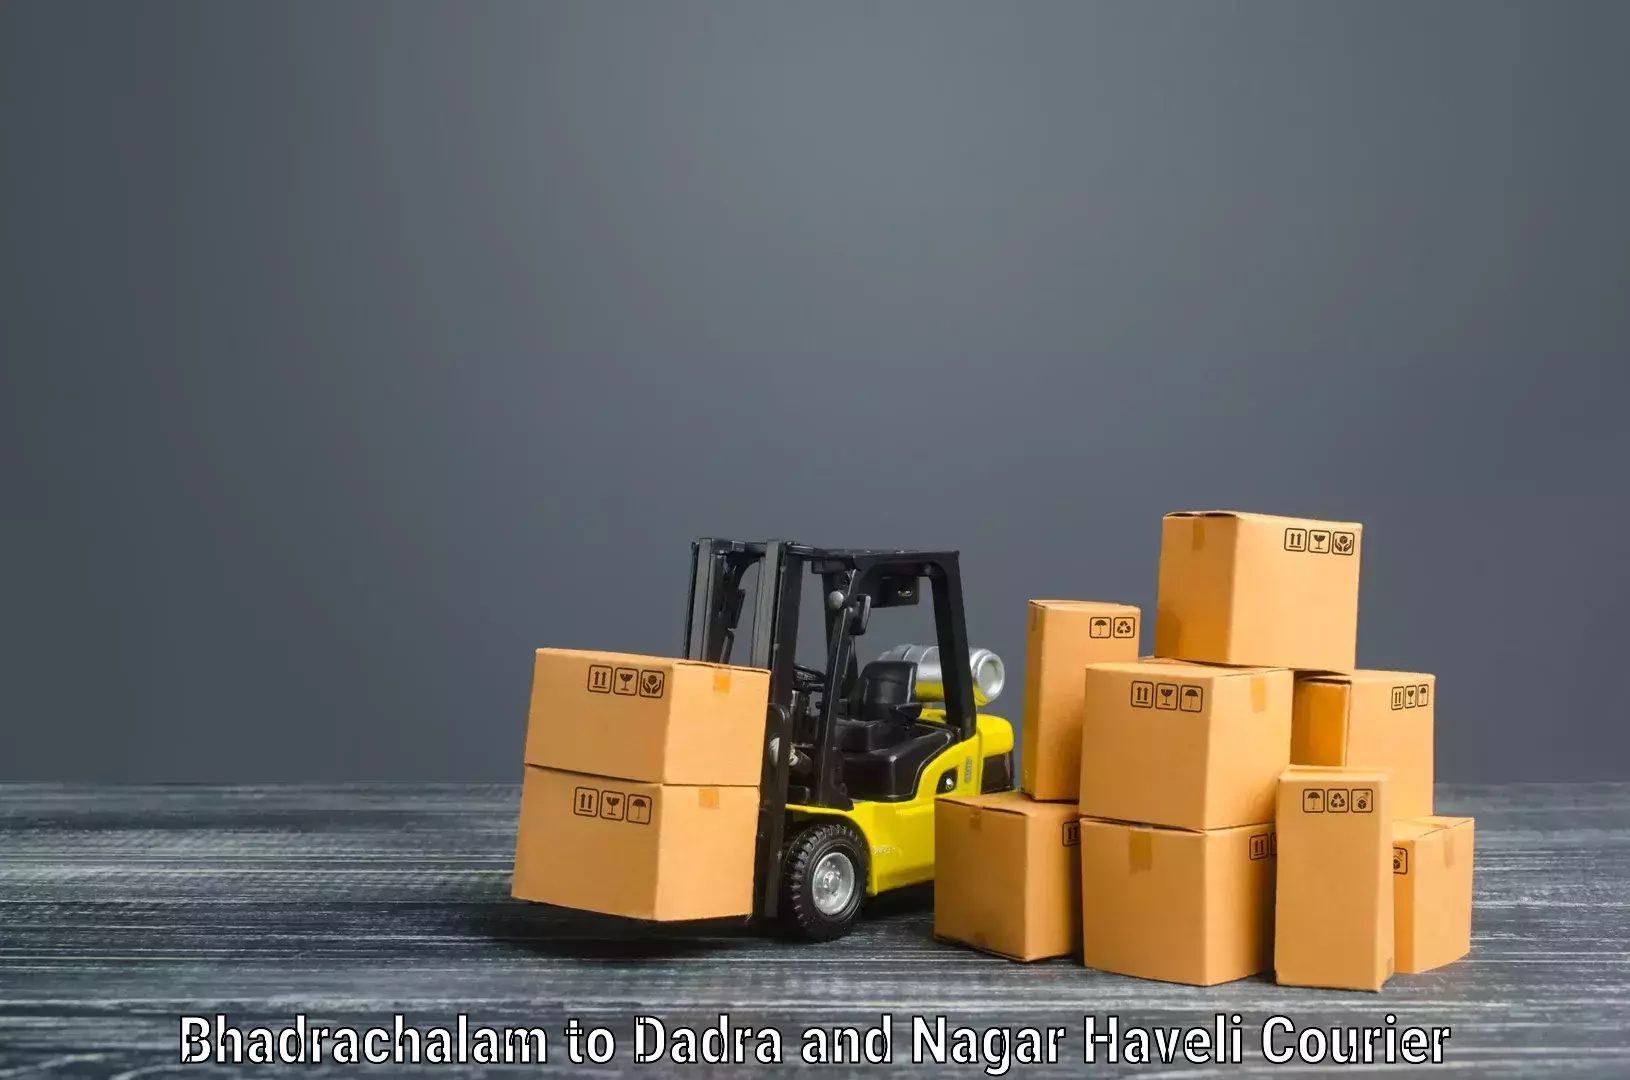 Furniture moving experts Bhadrachalam to Dadra and Nagar Haveli